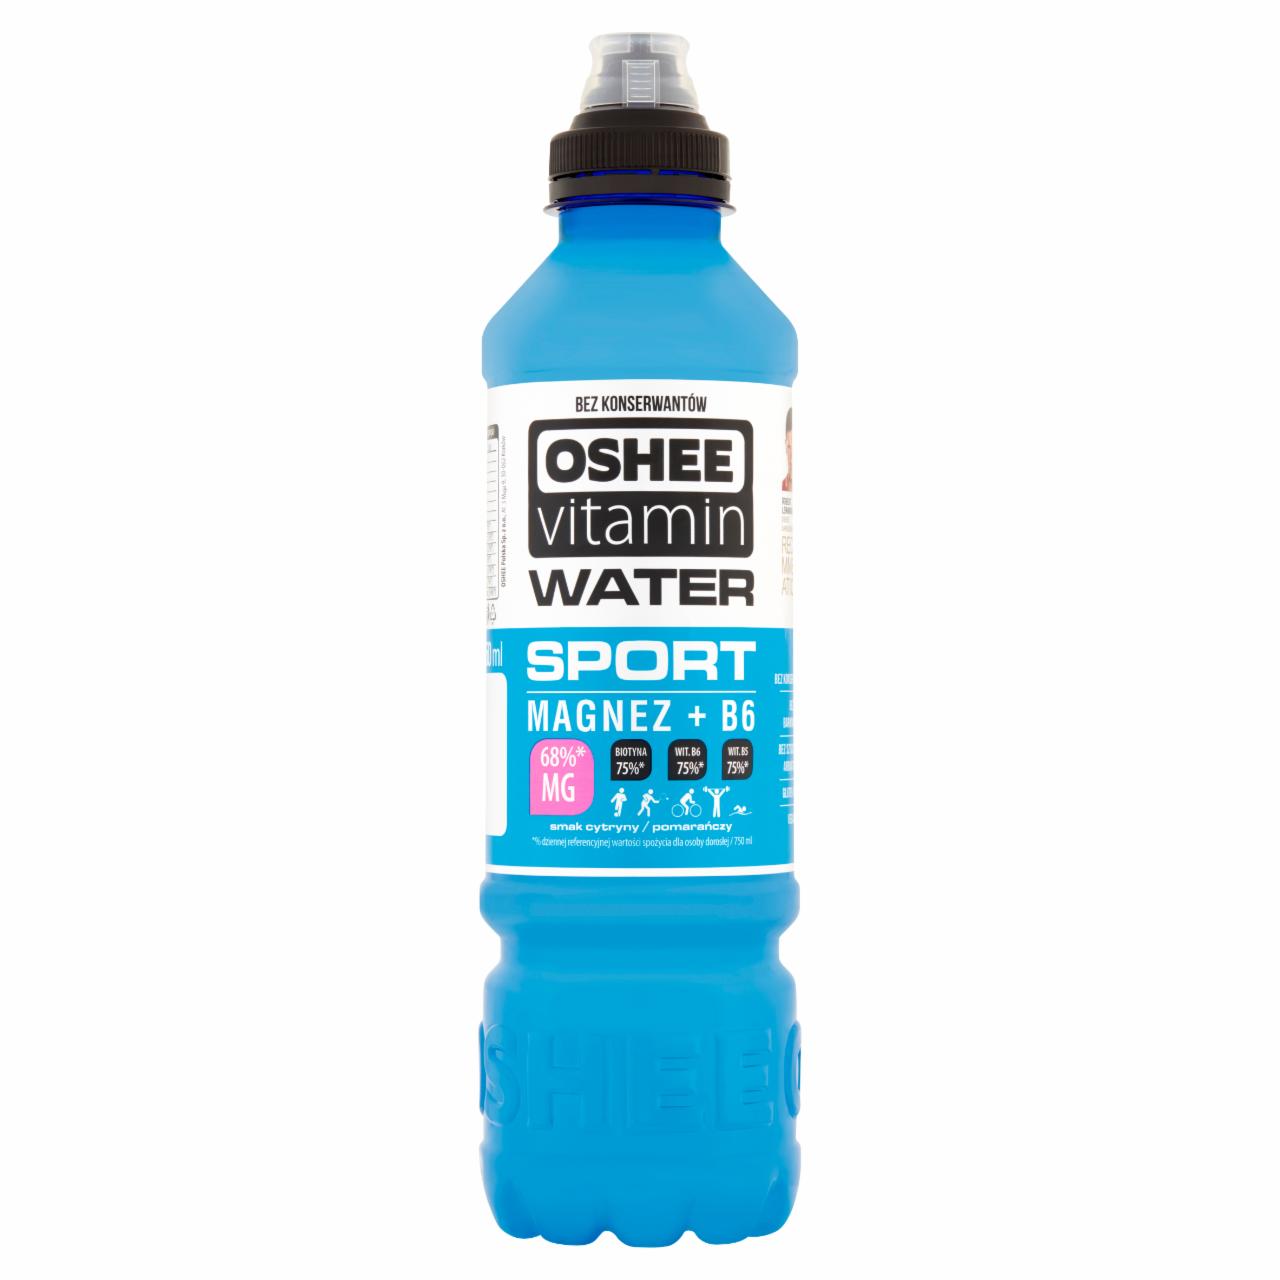 Zdjęcia - Oshee Vitamin Water Napój niegazowany o smaku cytryny-pomarańczy 750 ml